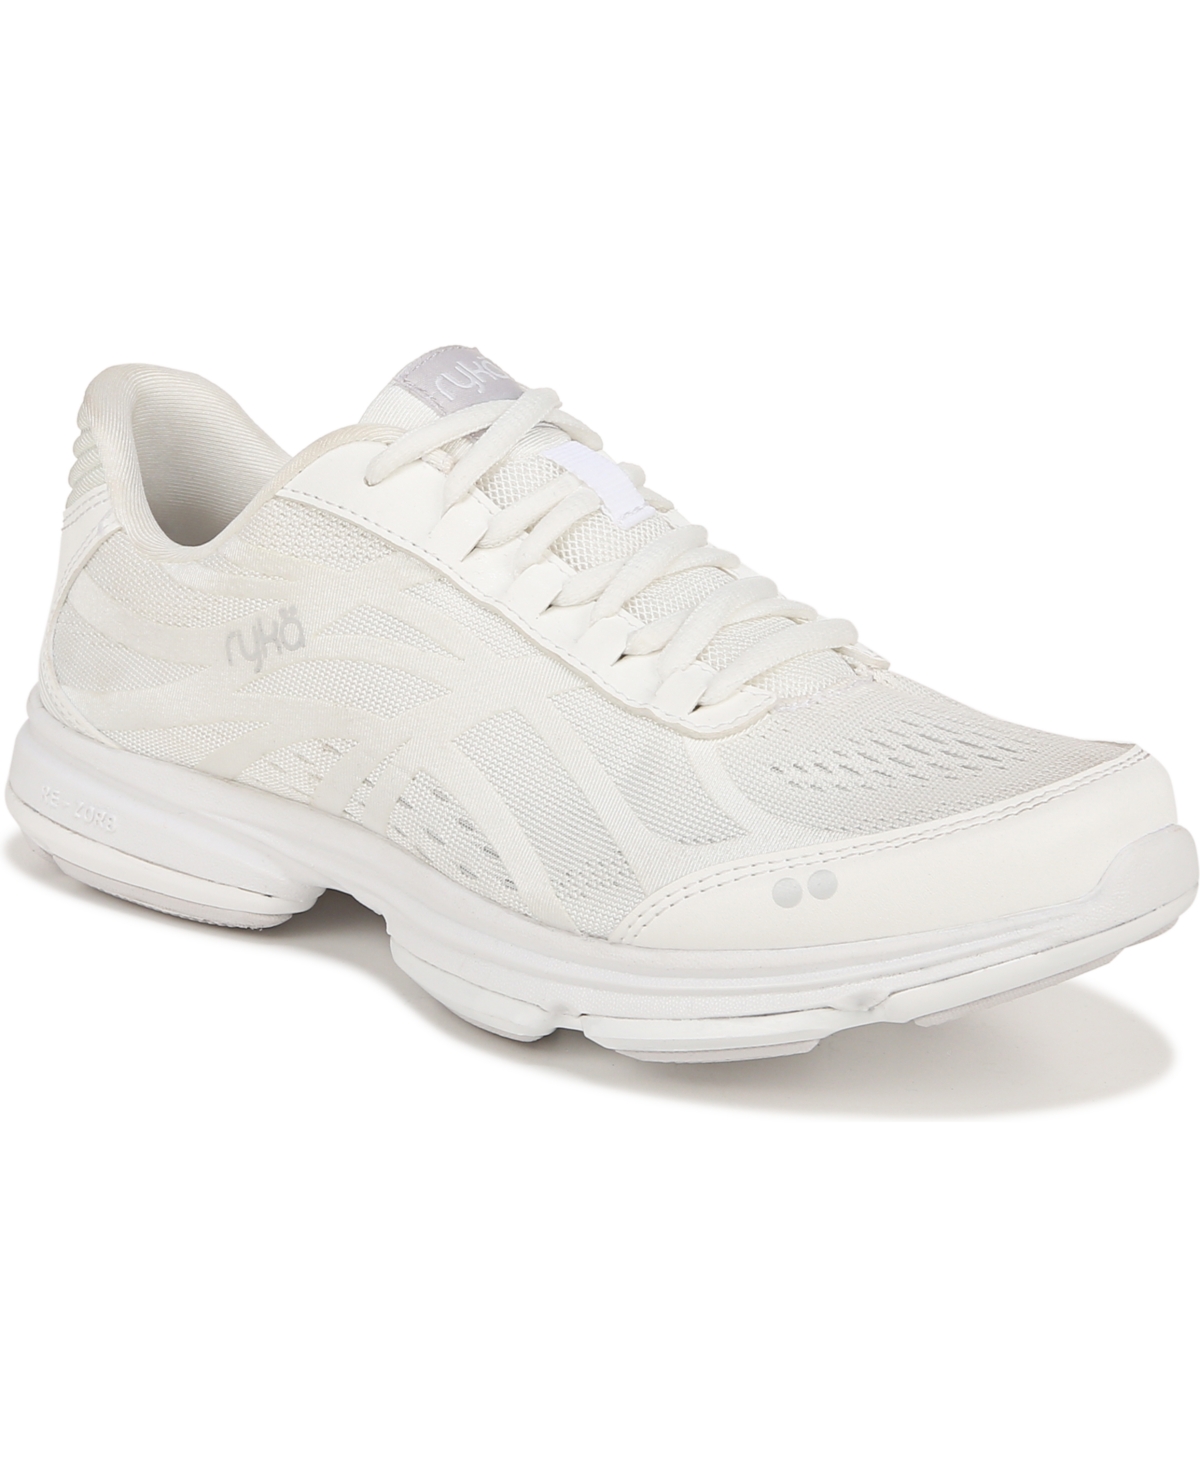 Shop Ryka Women's Devotion Plus 3 Walking Shoes In Bright White